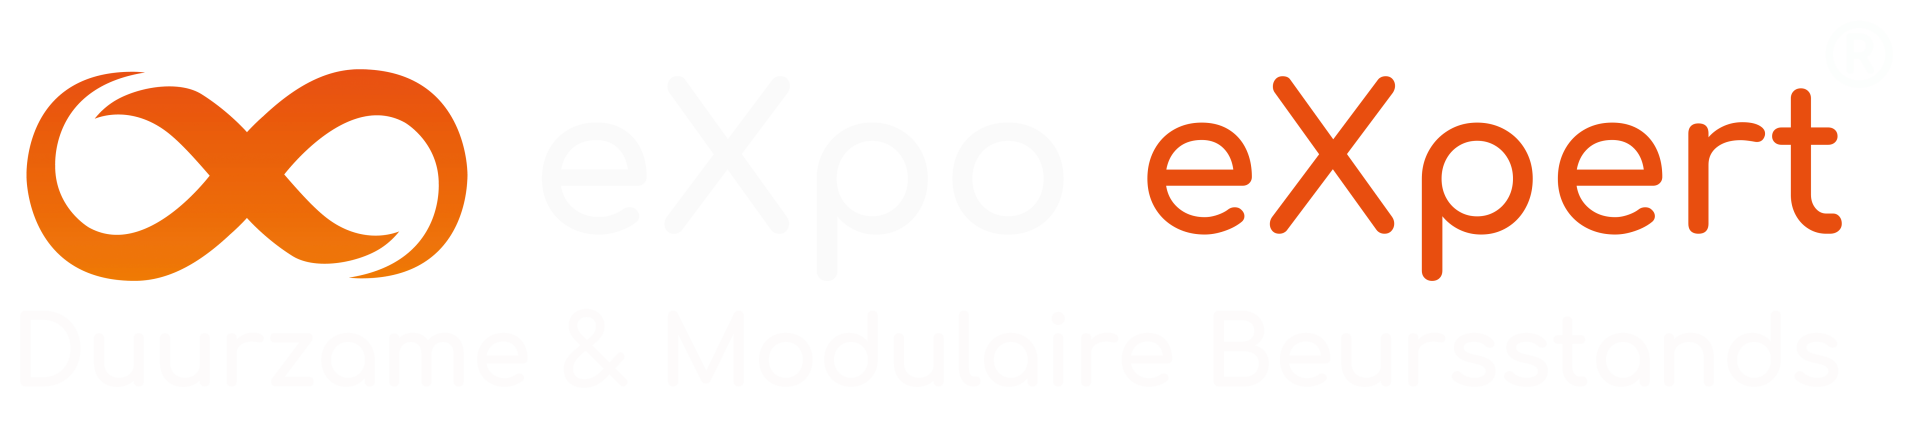 eXpo eXpert wit horizontaal met tagline 1